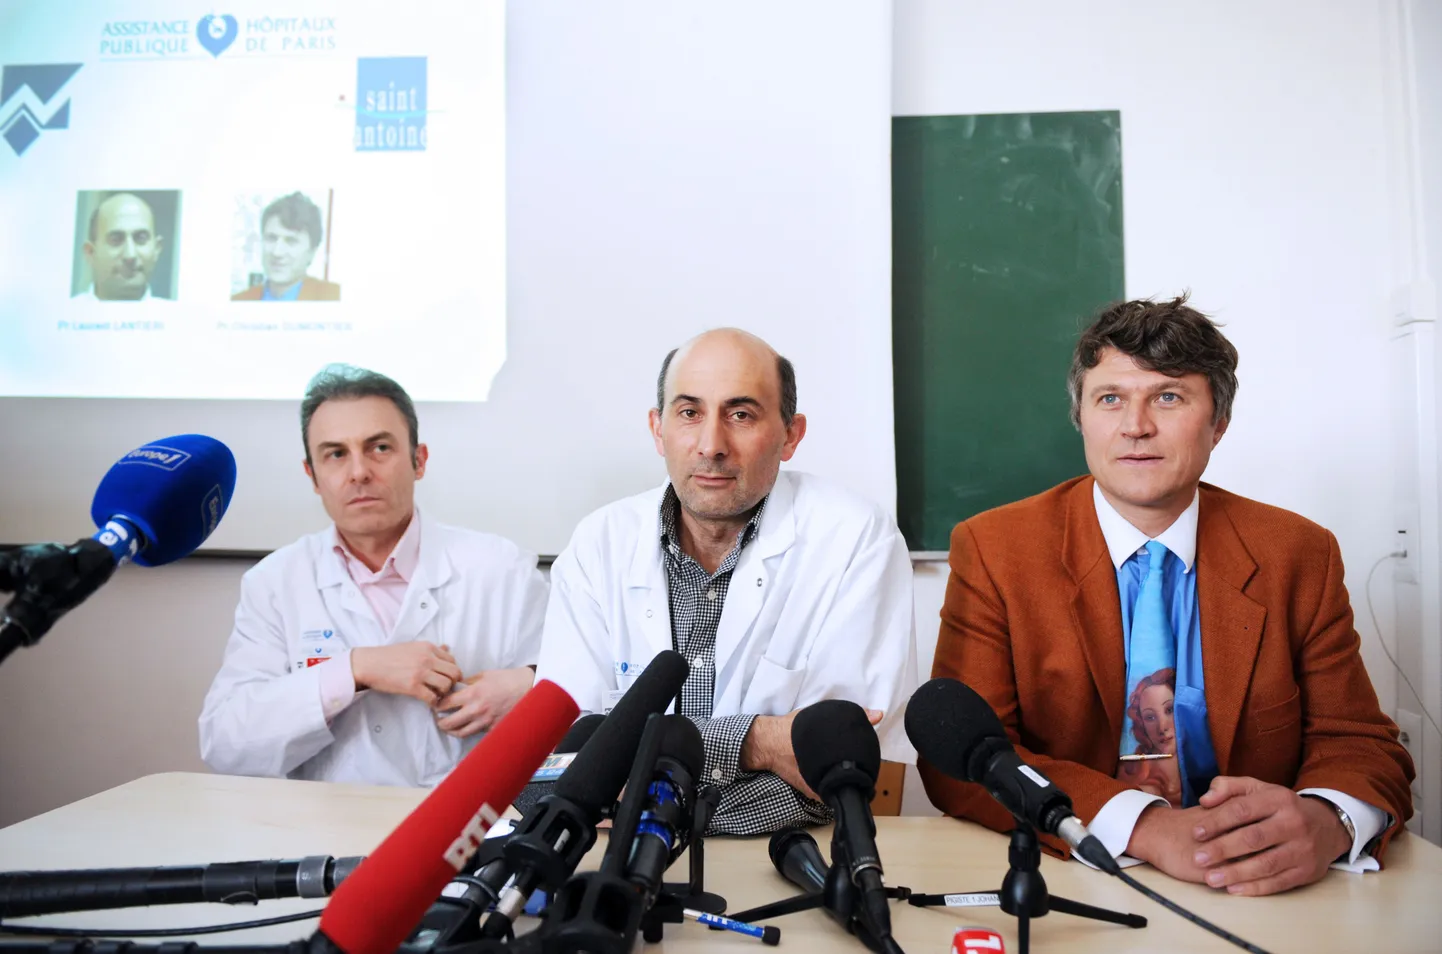 Henri Mondori haigla kirurgid Jean-Paul Meningaud (vasakul), Christian Dumontier (paremal)ja Laurent Lantieri pressikonverentsil. Nende kirurgide juhtimisel tehti operatsioonid, kus üks põlenud nahaga patsient sai endale uue näo ja käed